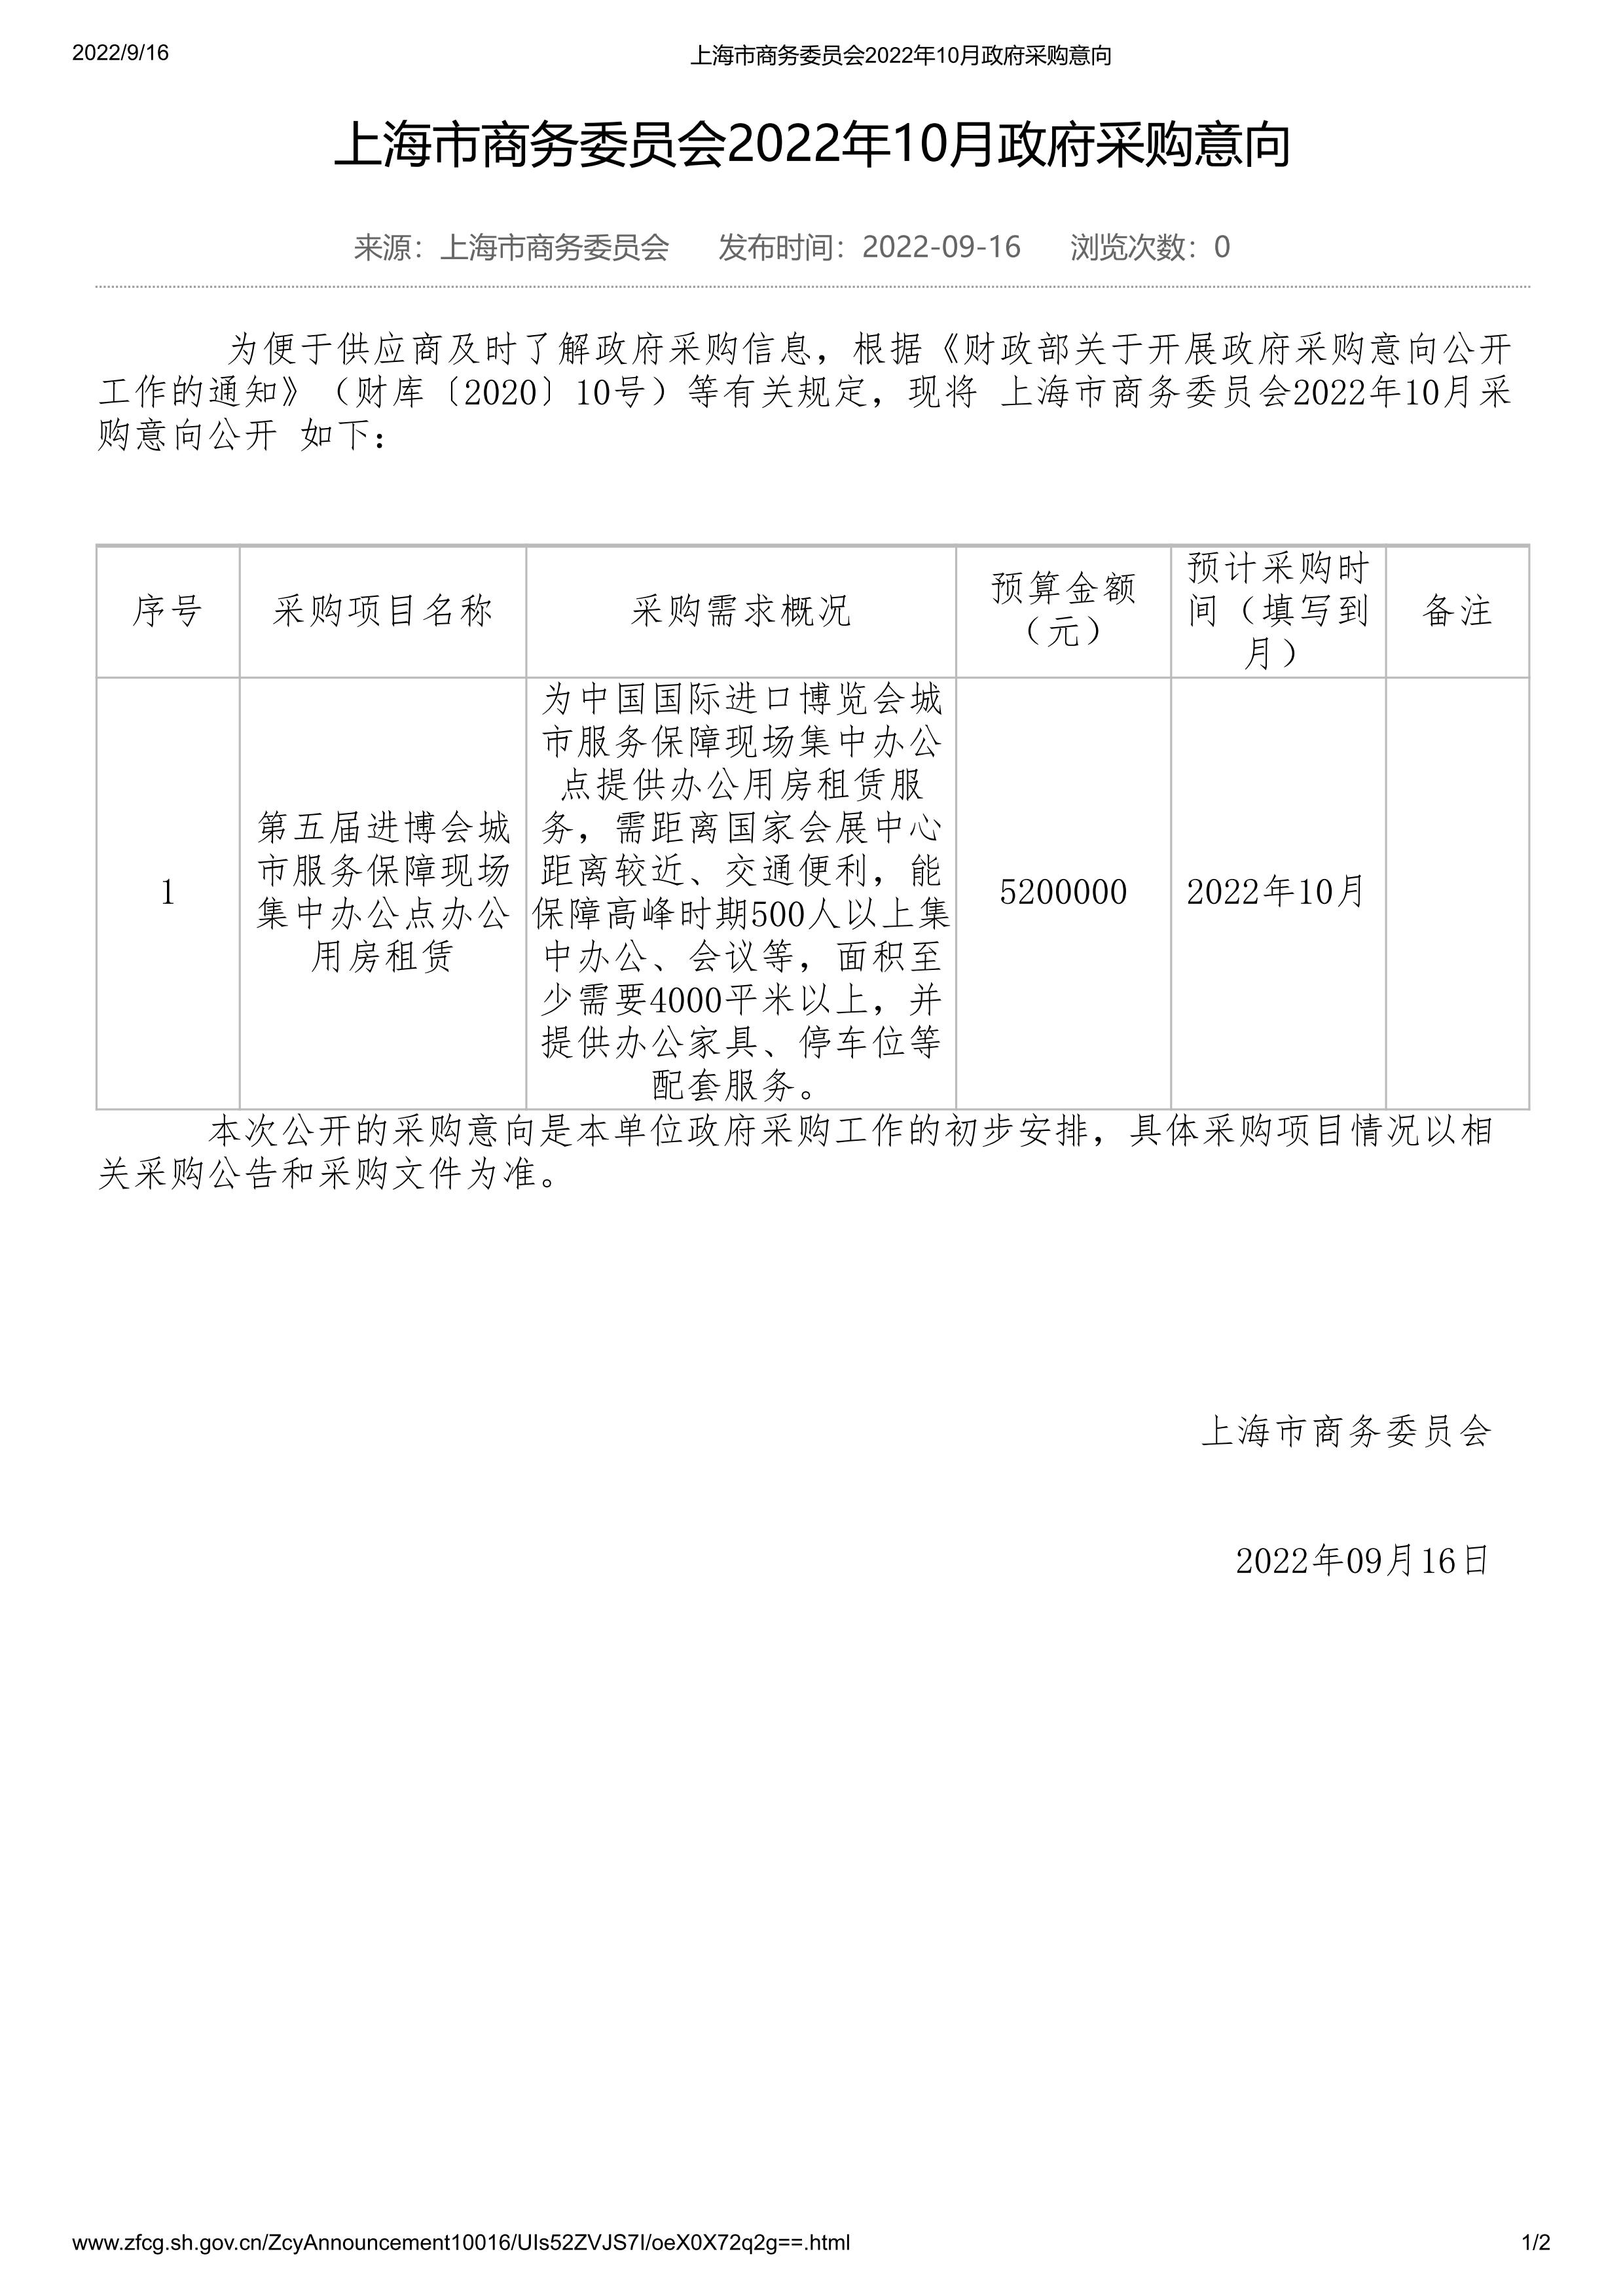 上海市商务委员会2022年10月政府采购意向_01.jpg